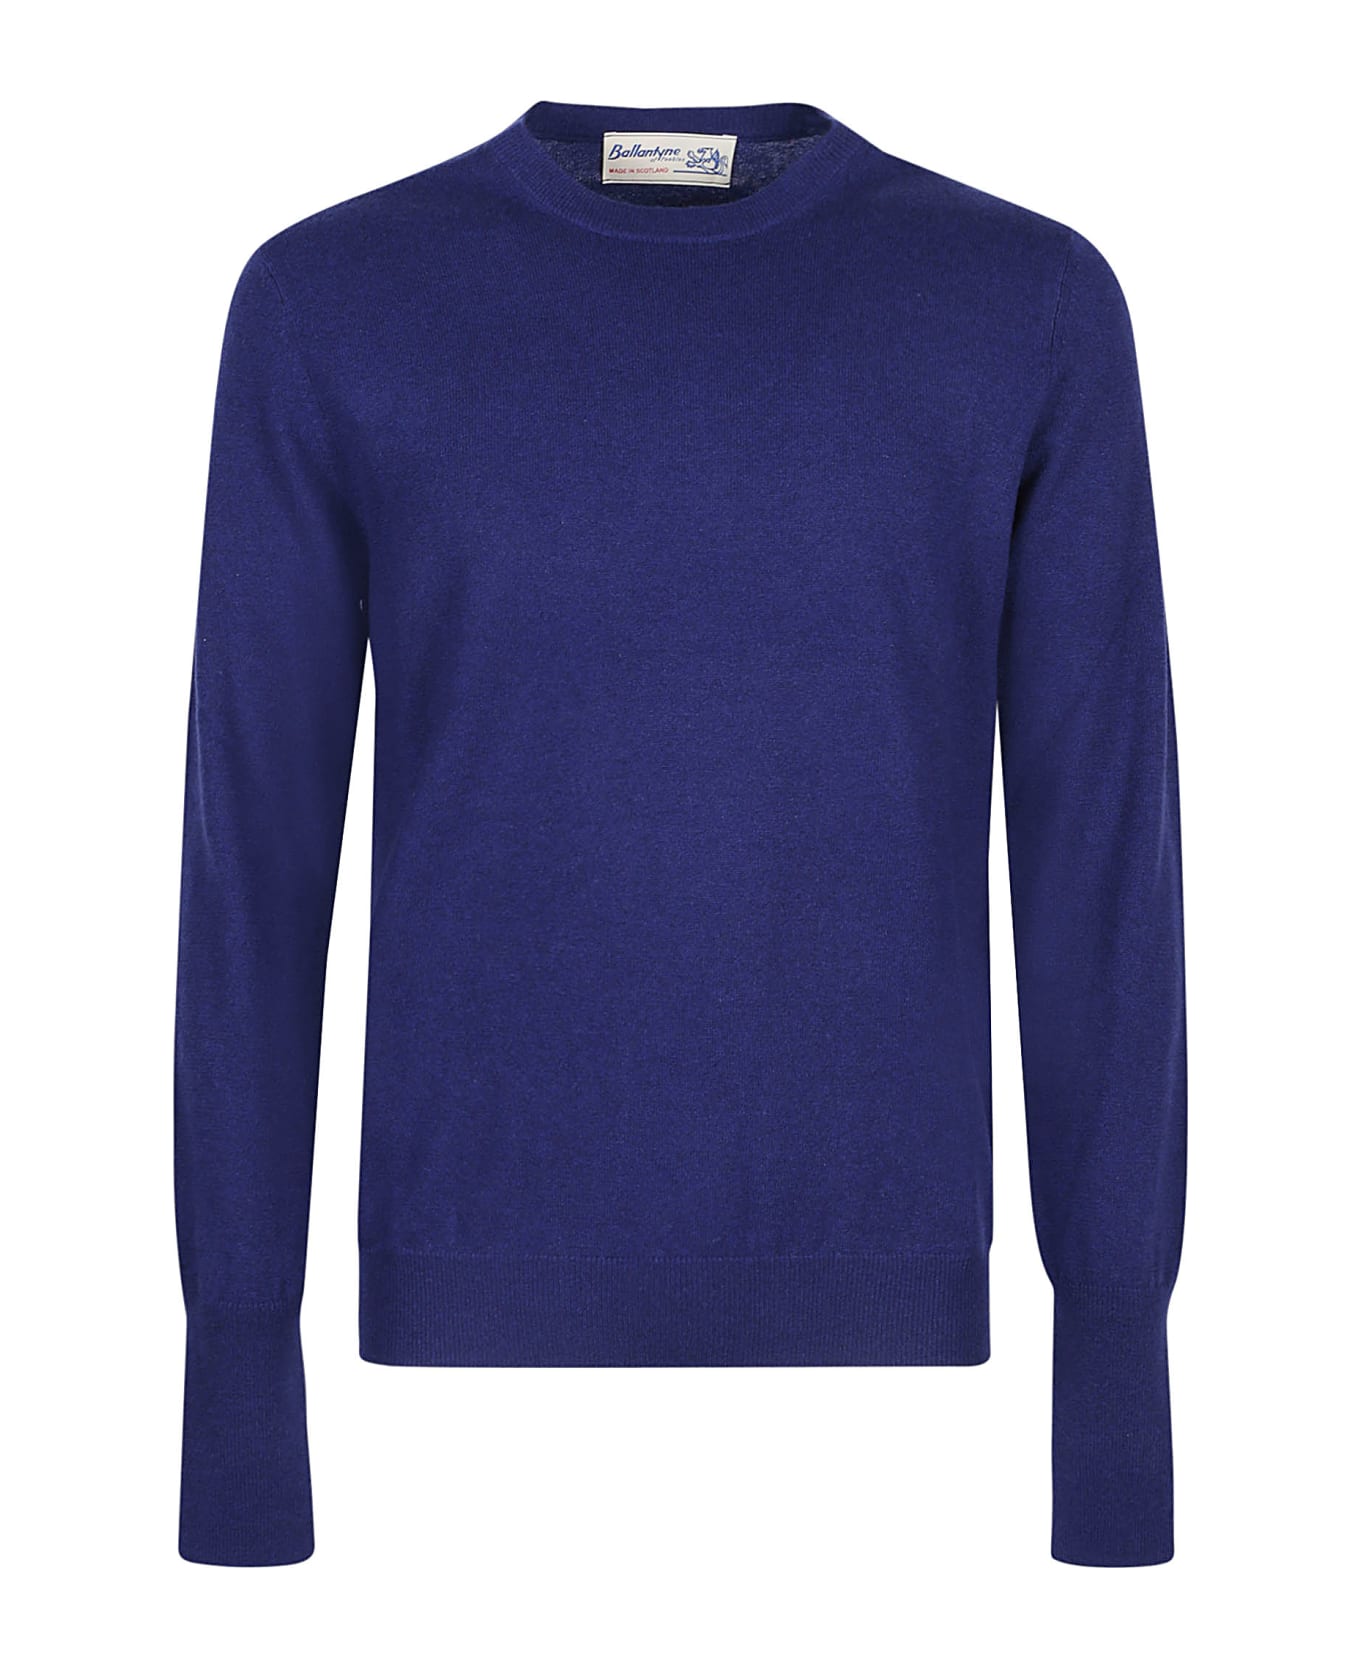 Ballantyne Plain Round Neck Sweater - Velvet